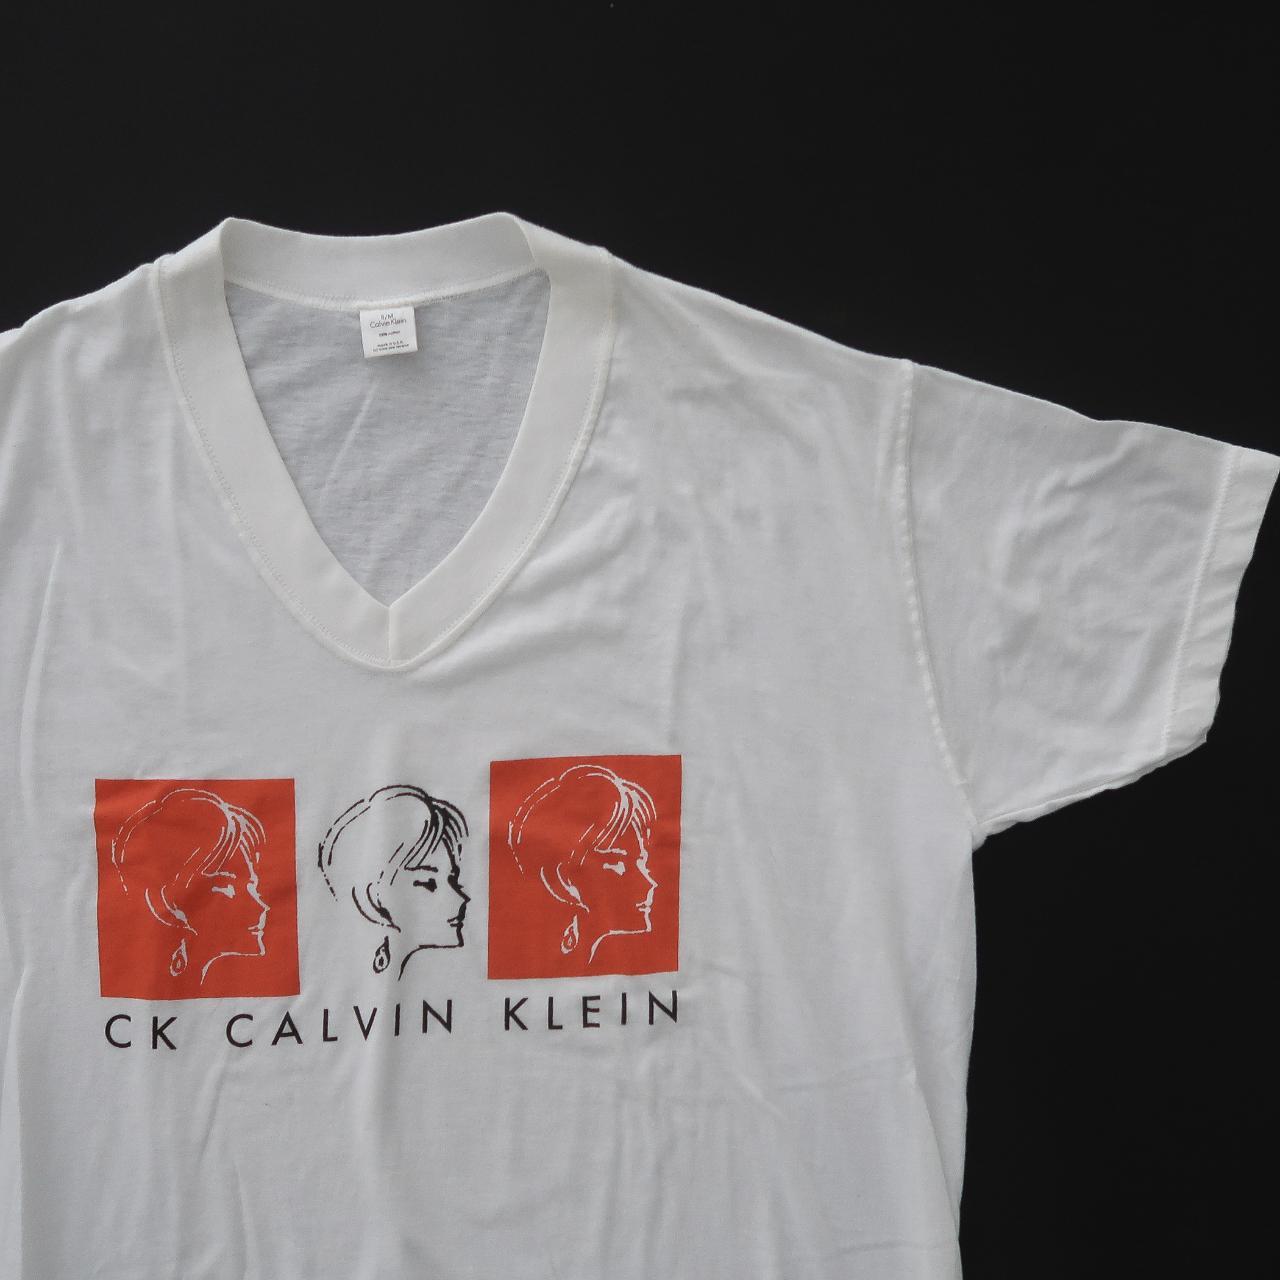 Depop Klein retro Rad... Vintage - 90s sleep Calvin shirt.